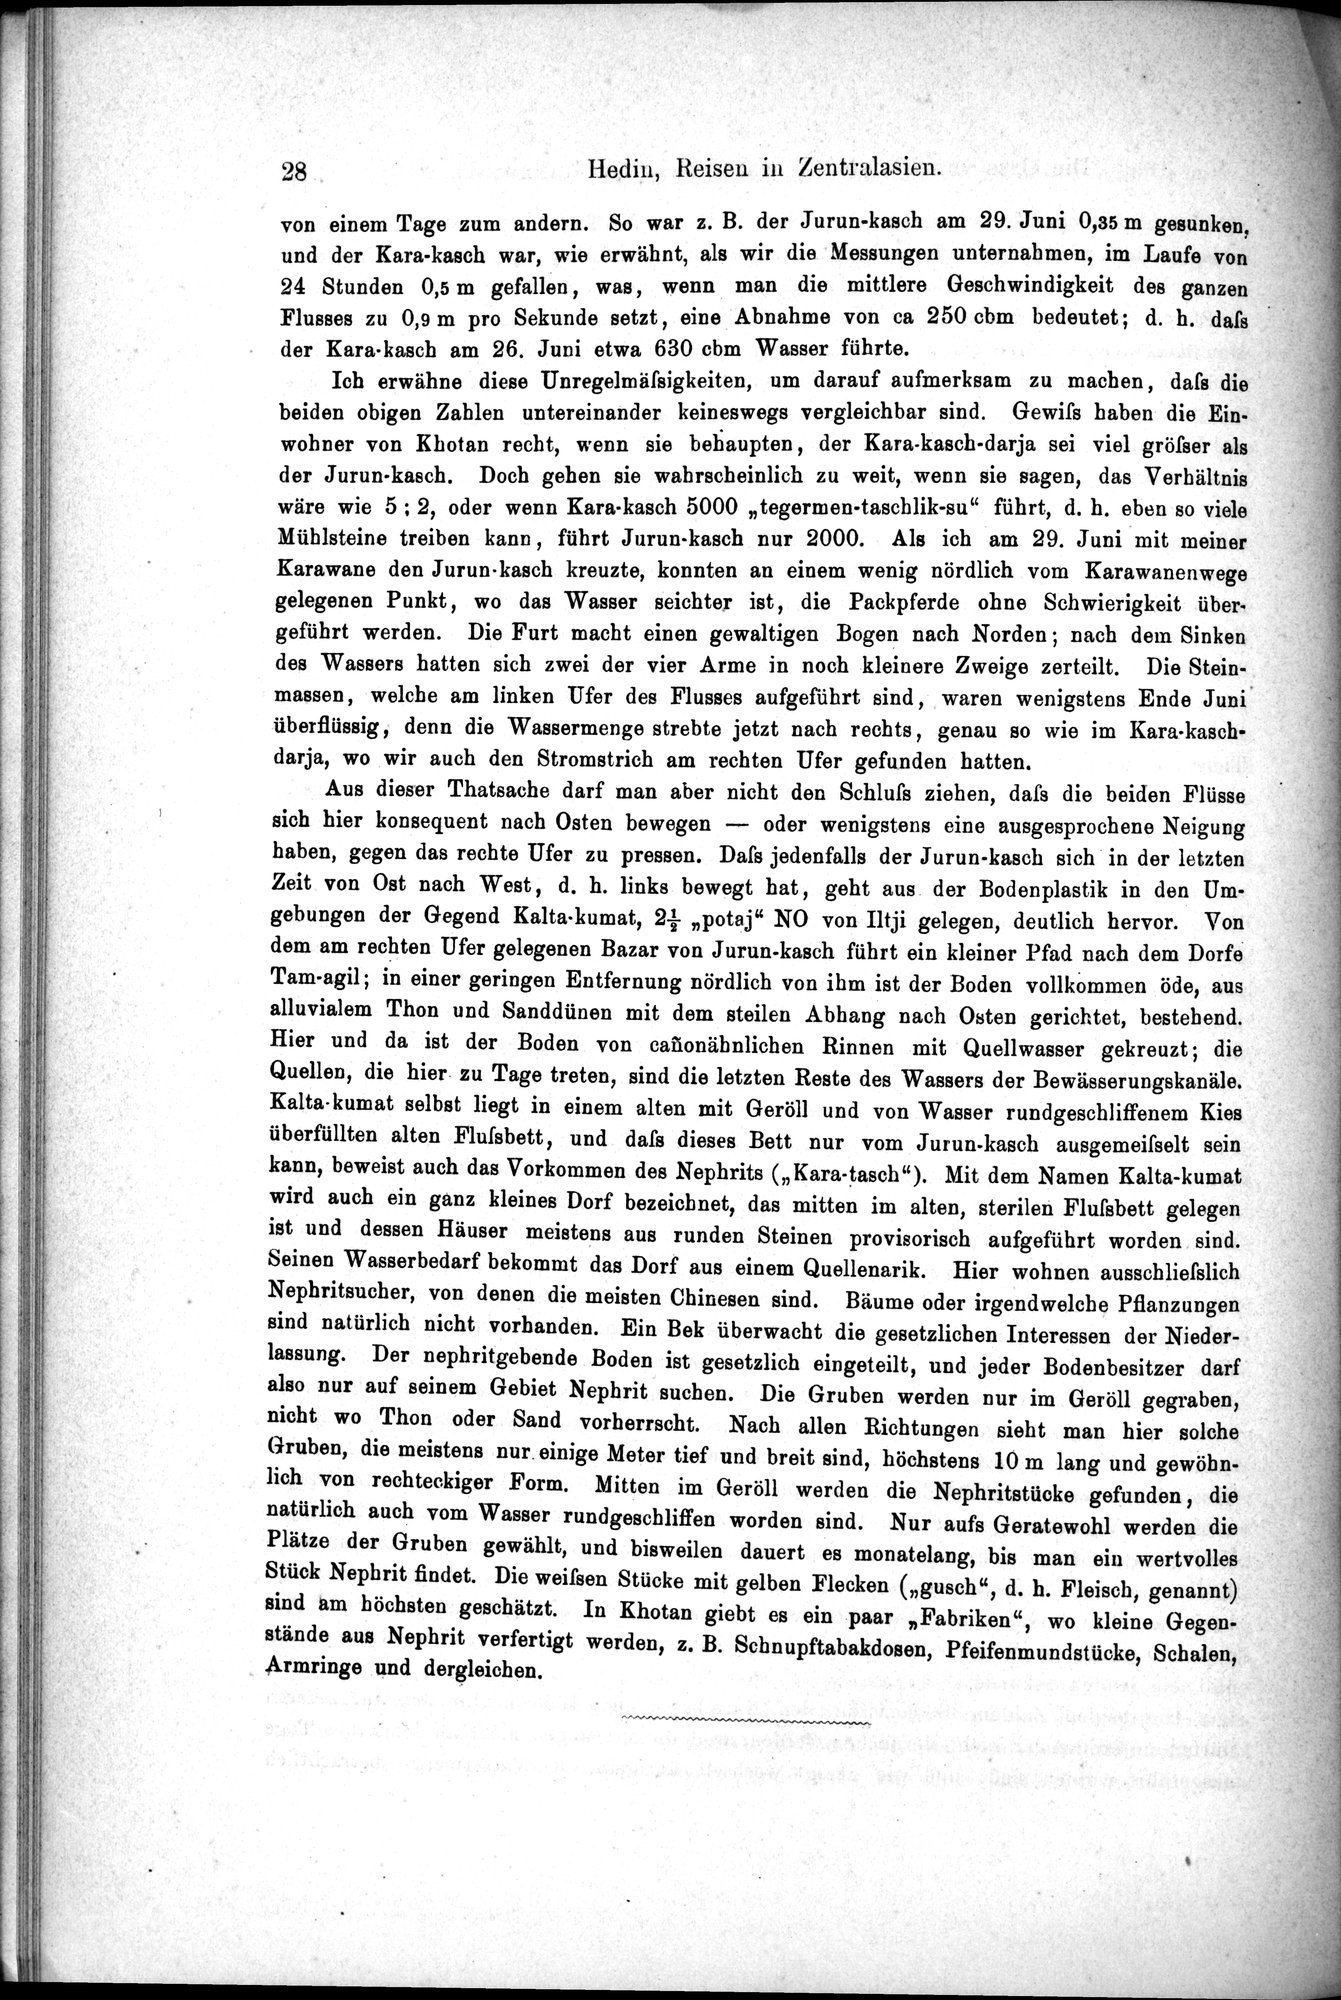 Die Geographische-Wissenschaftlichen Ergebnisse meiner Reisen in Zentralasien, 1894-1897 : vol.1 / Page 40 (Grayscale High Resolution Image)